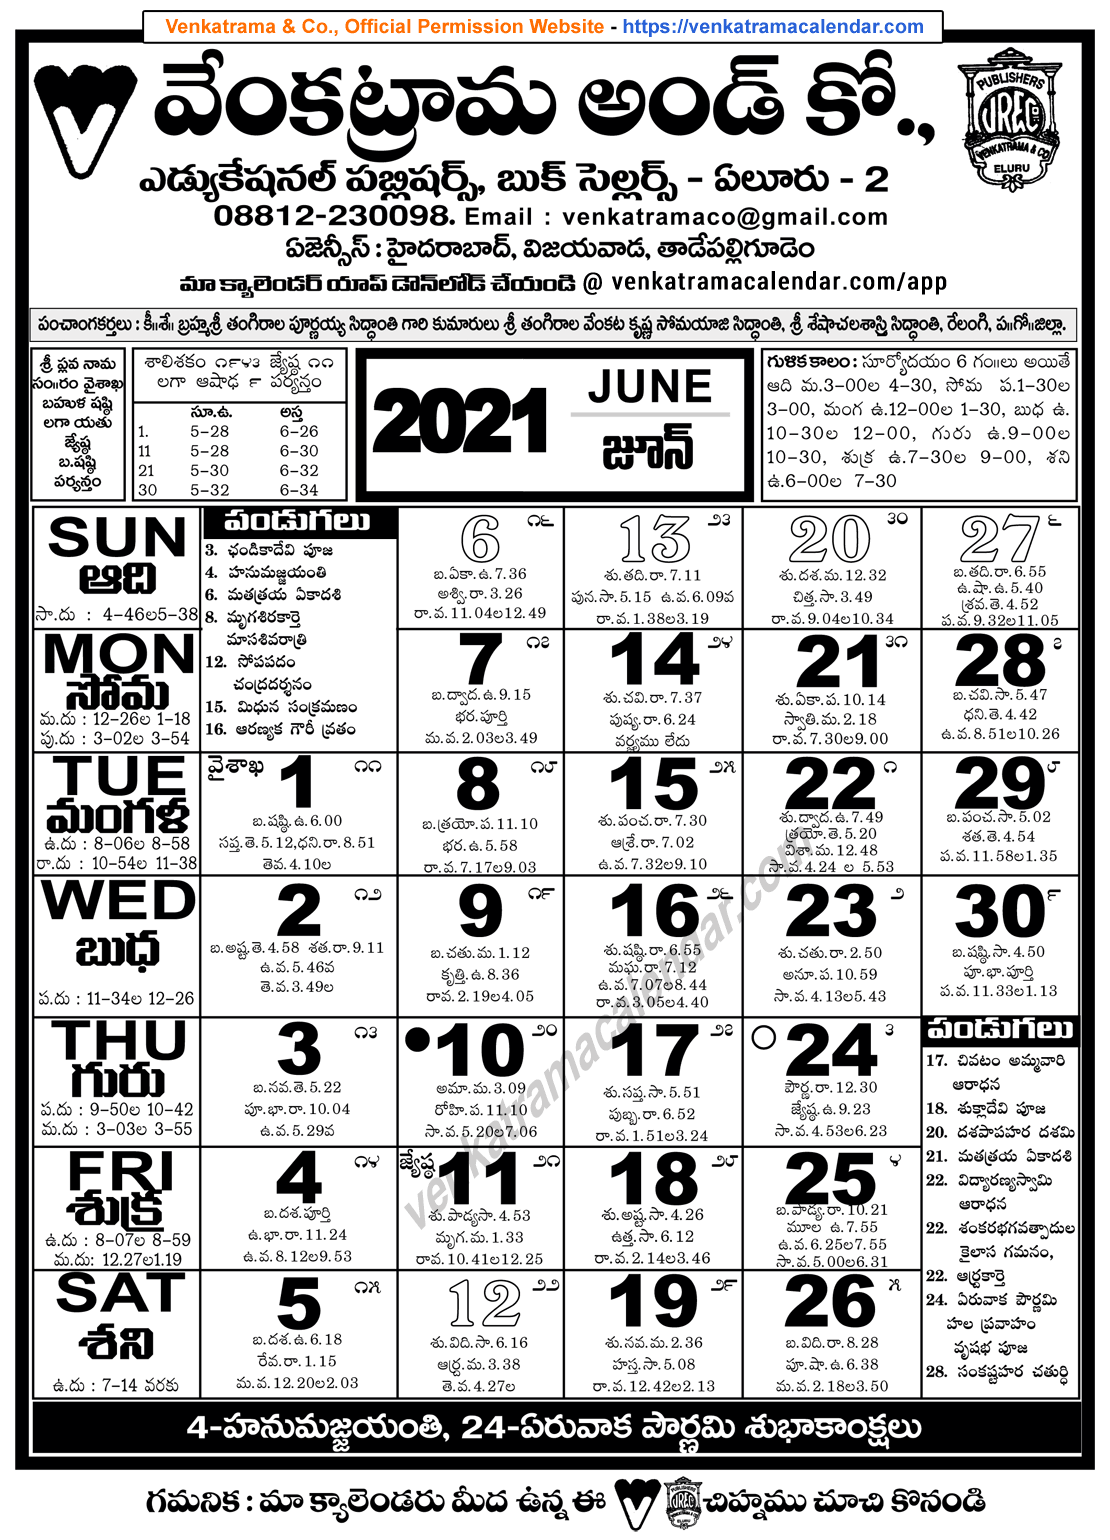 May 2022 Telugu Calendar